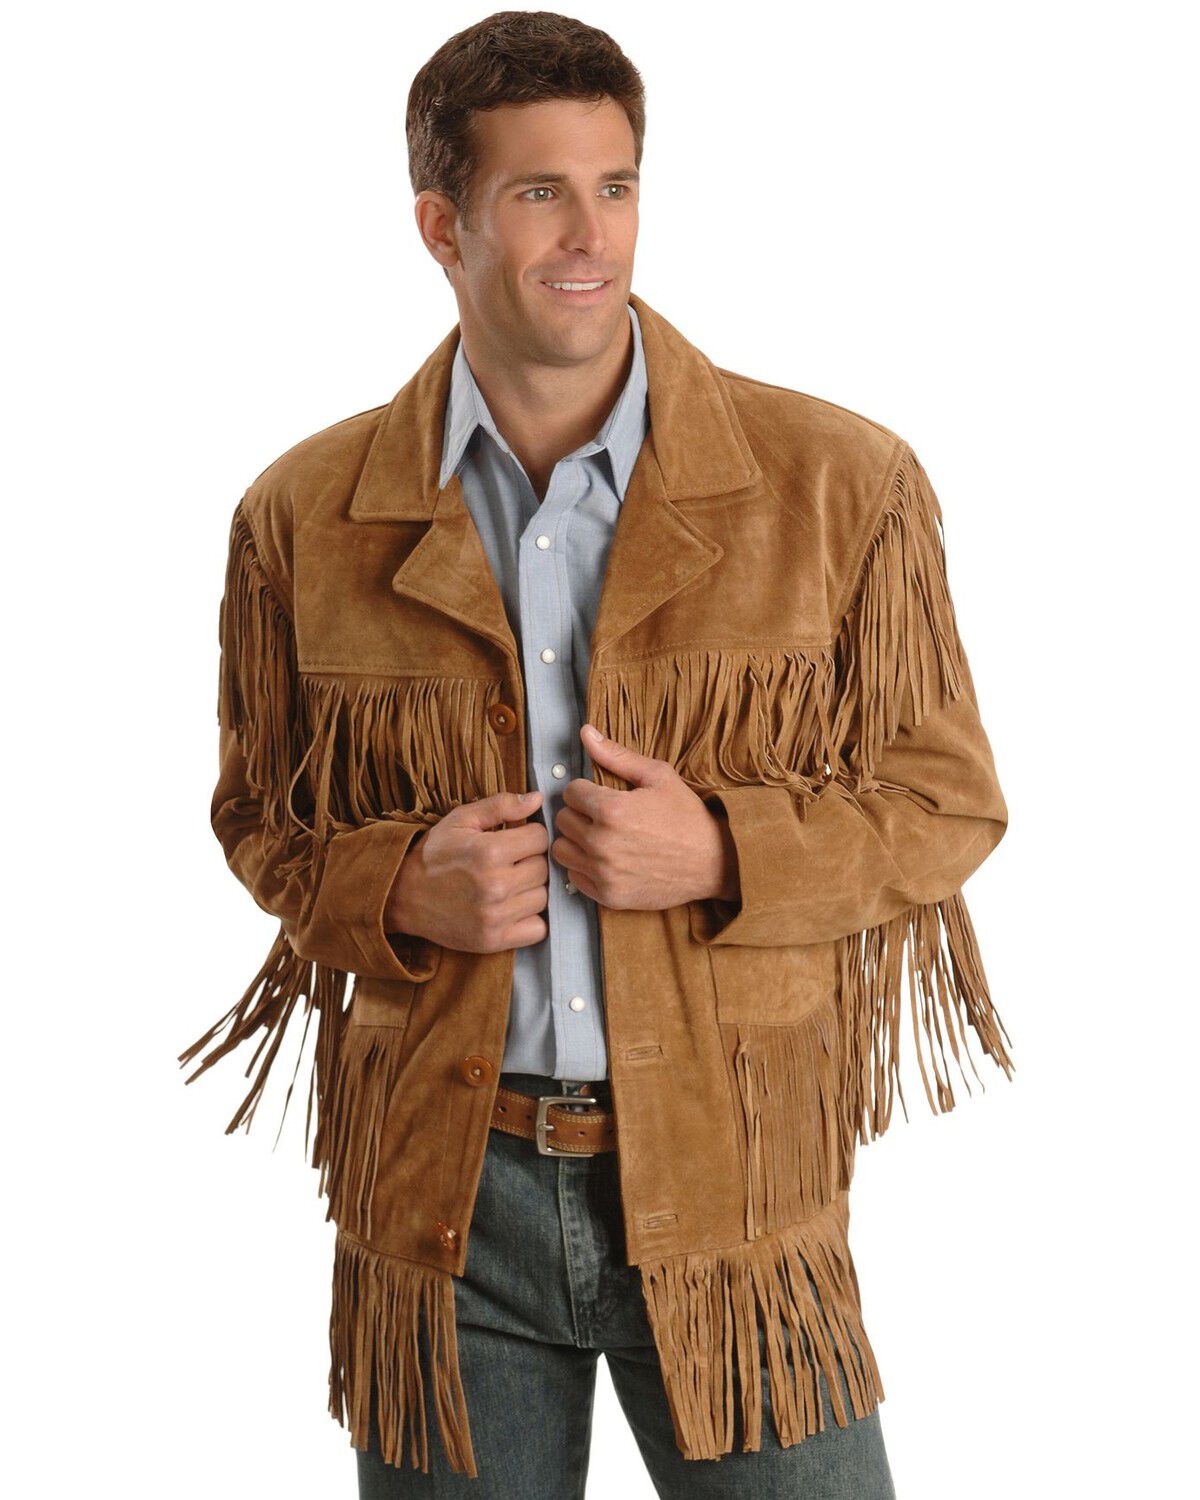 SRHides Mens Western Cowboy Fringed & Beaded Stylish Jacket